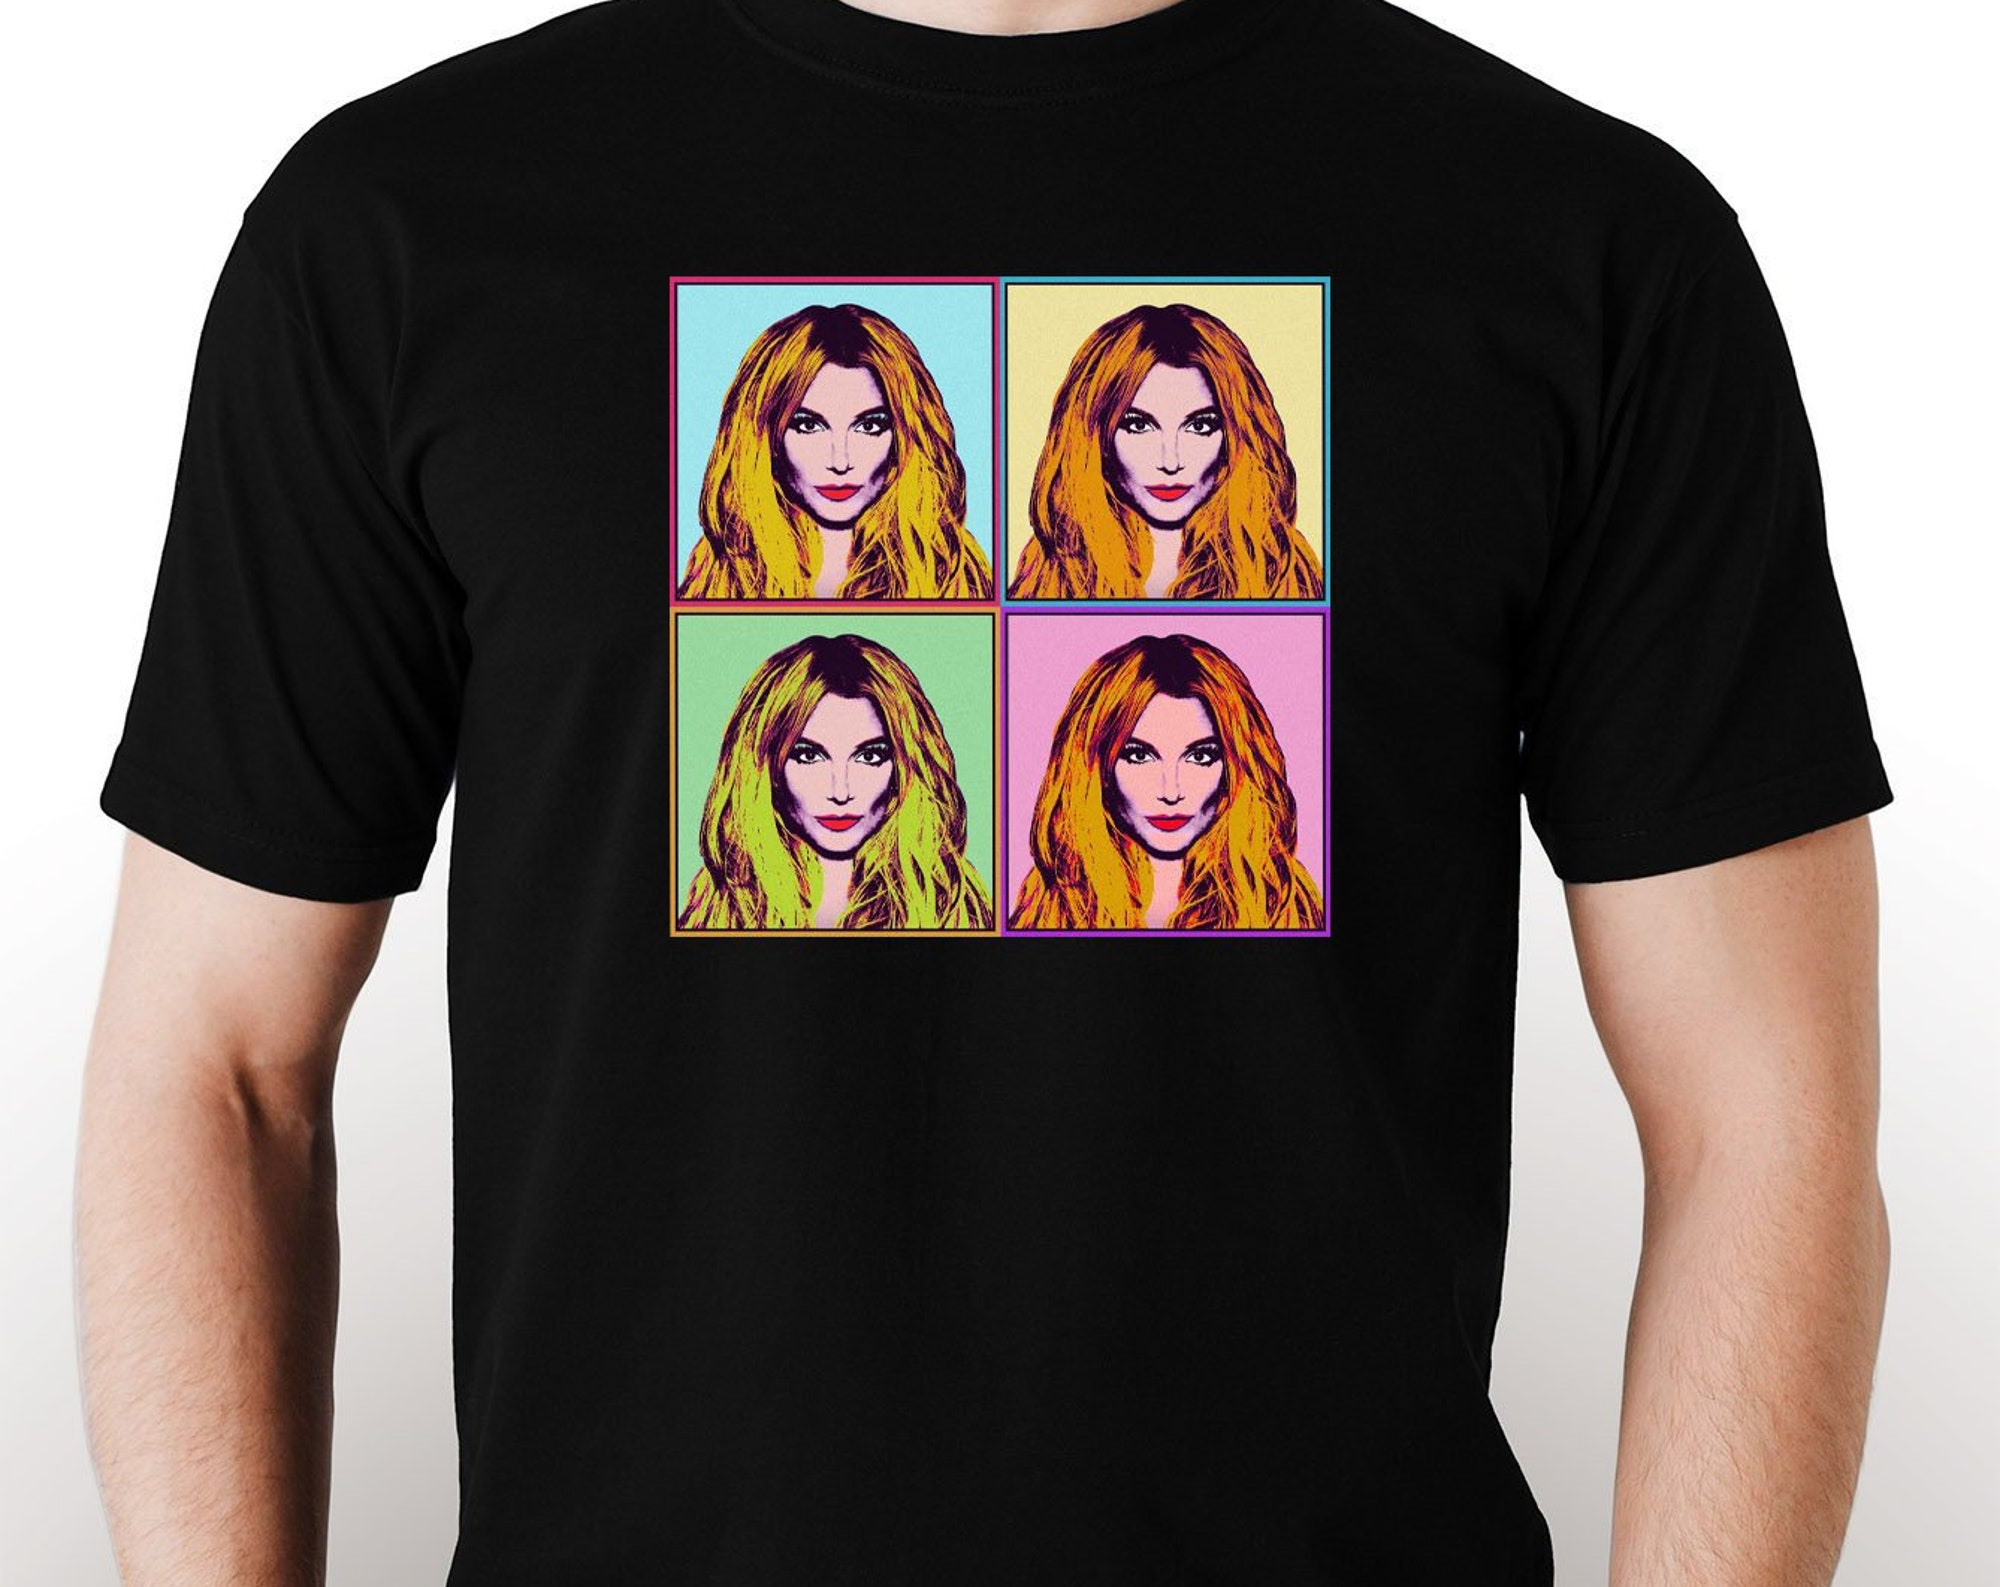 Discover Maglietta T-Shirt Britney Spears Design Stampa Regalo Uomo Donna Bambini